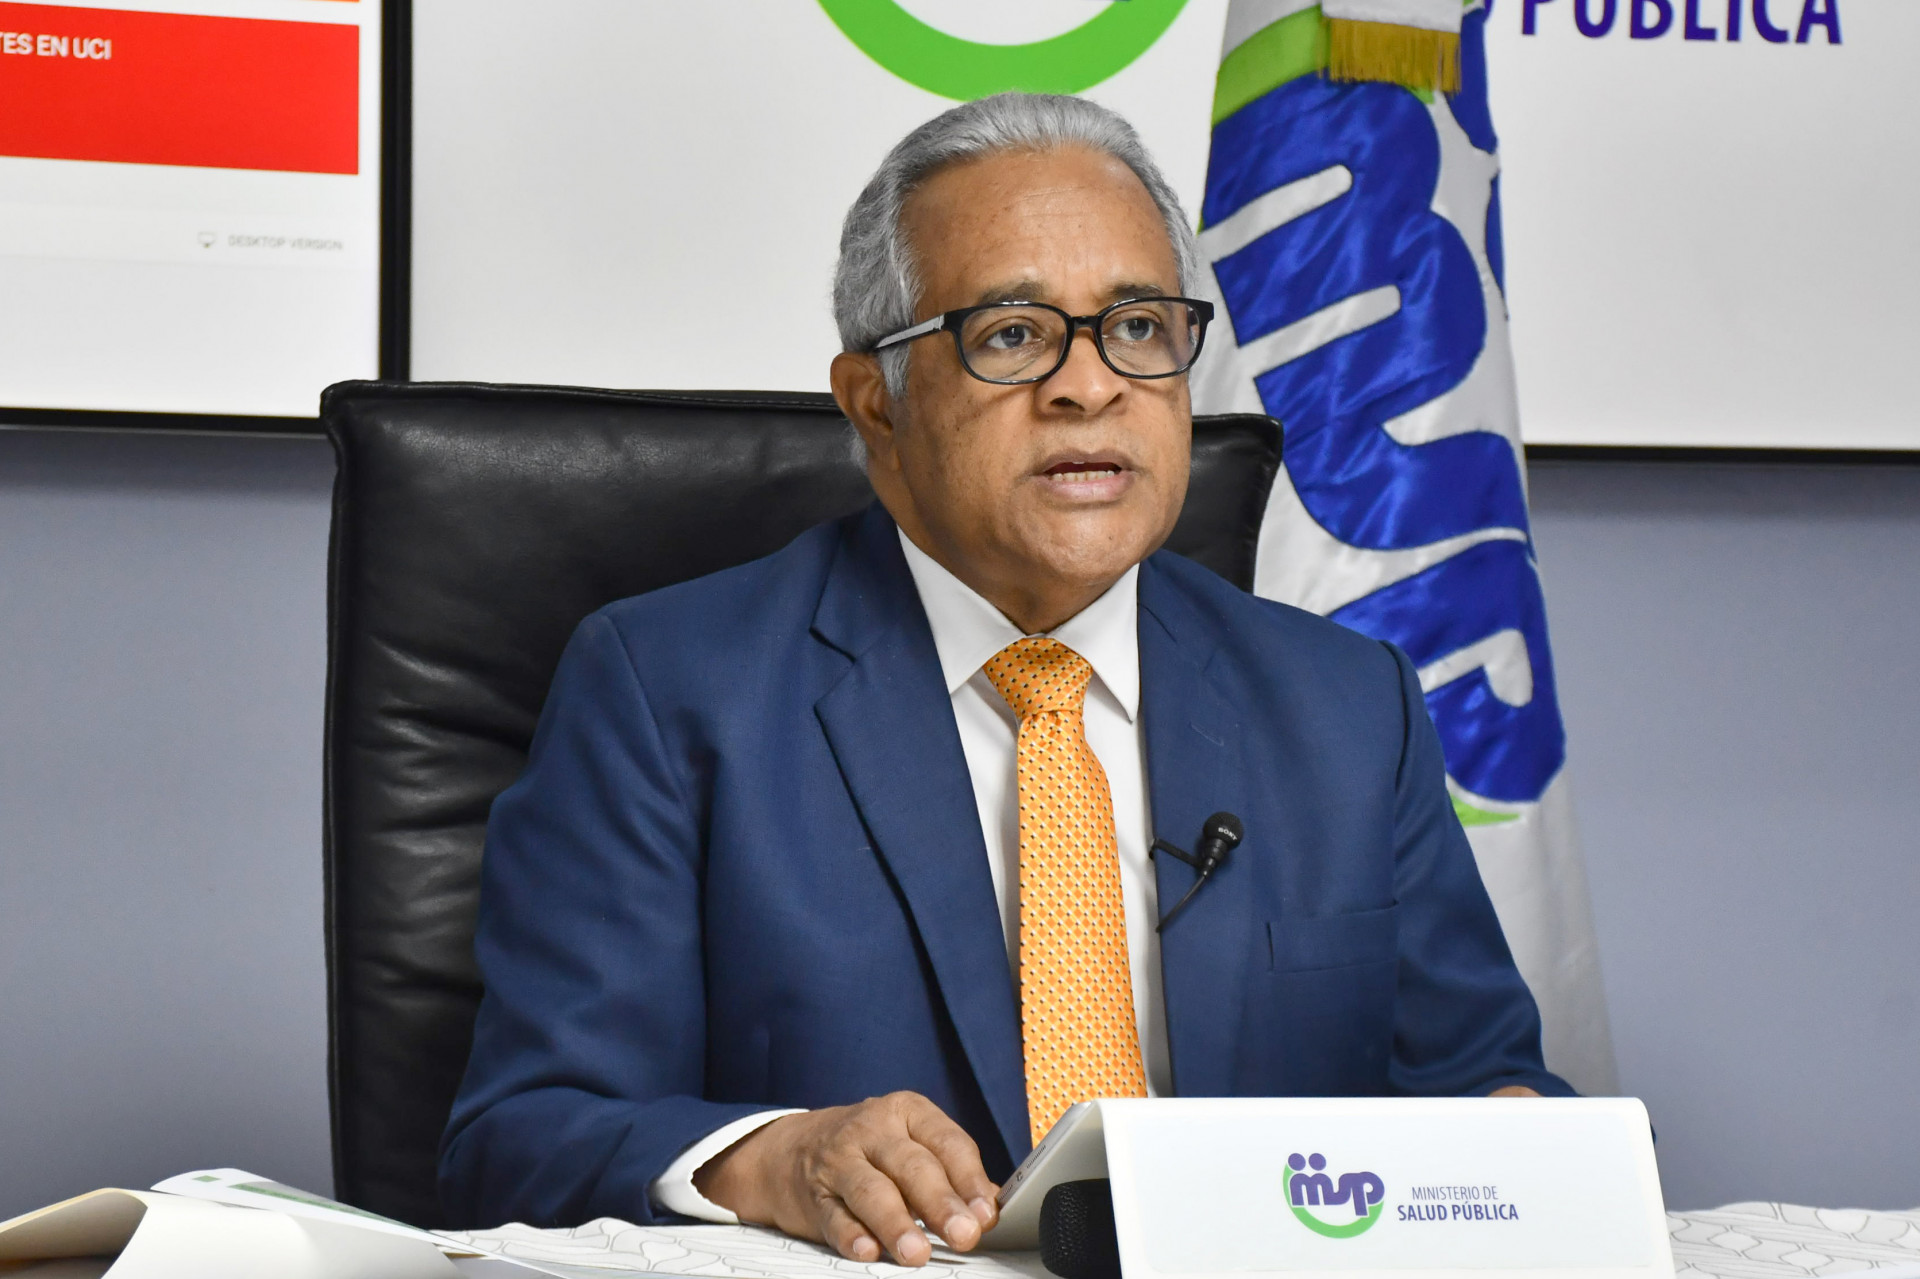 REPÚBLICA DOMINICANA: República Dominicana registra 951 casos nuevos y más de 18,300 recuperados de COVID-19